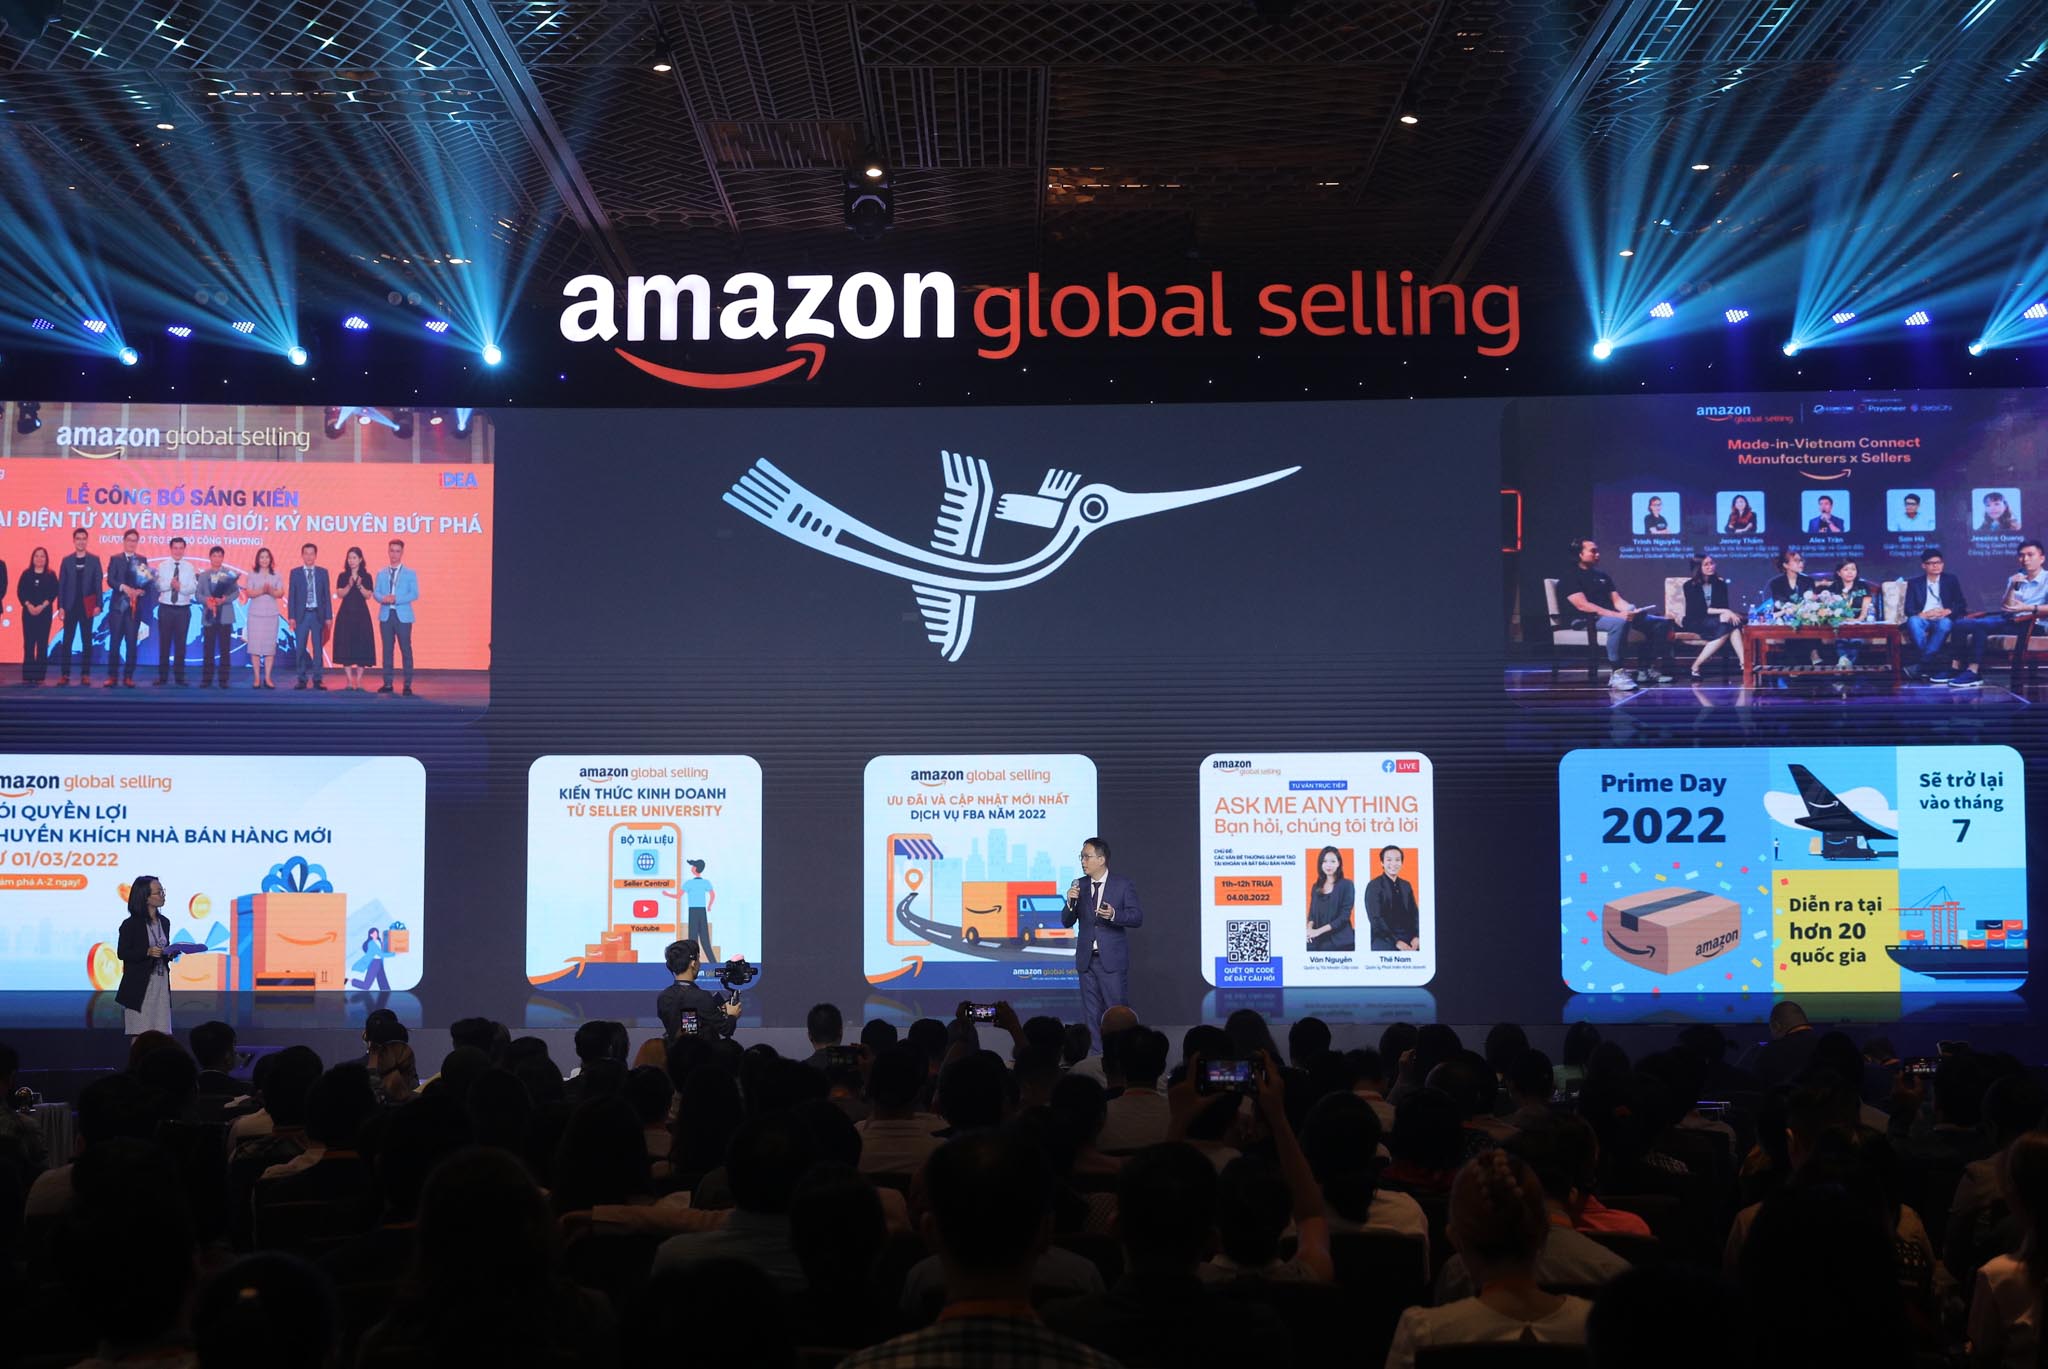 “Amazon Week 2022: Hội nghị Thương mại điện tử xuyên biên giới” khai mạc tại TP.HCM